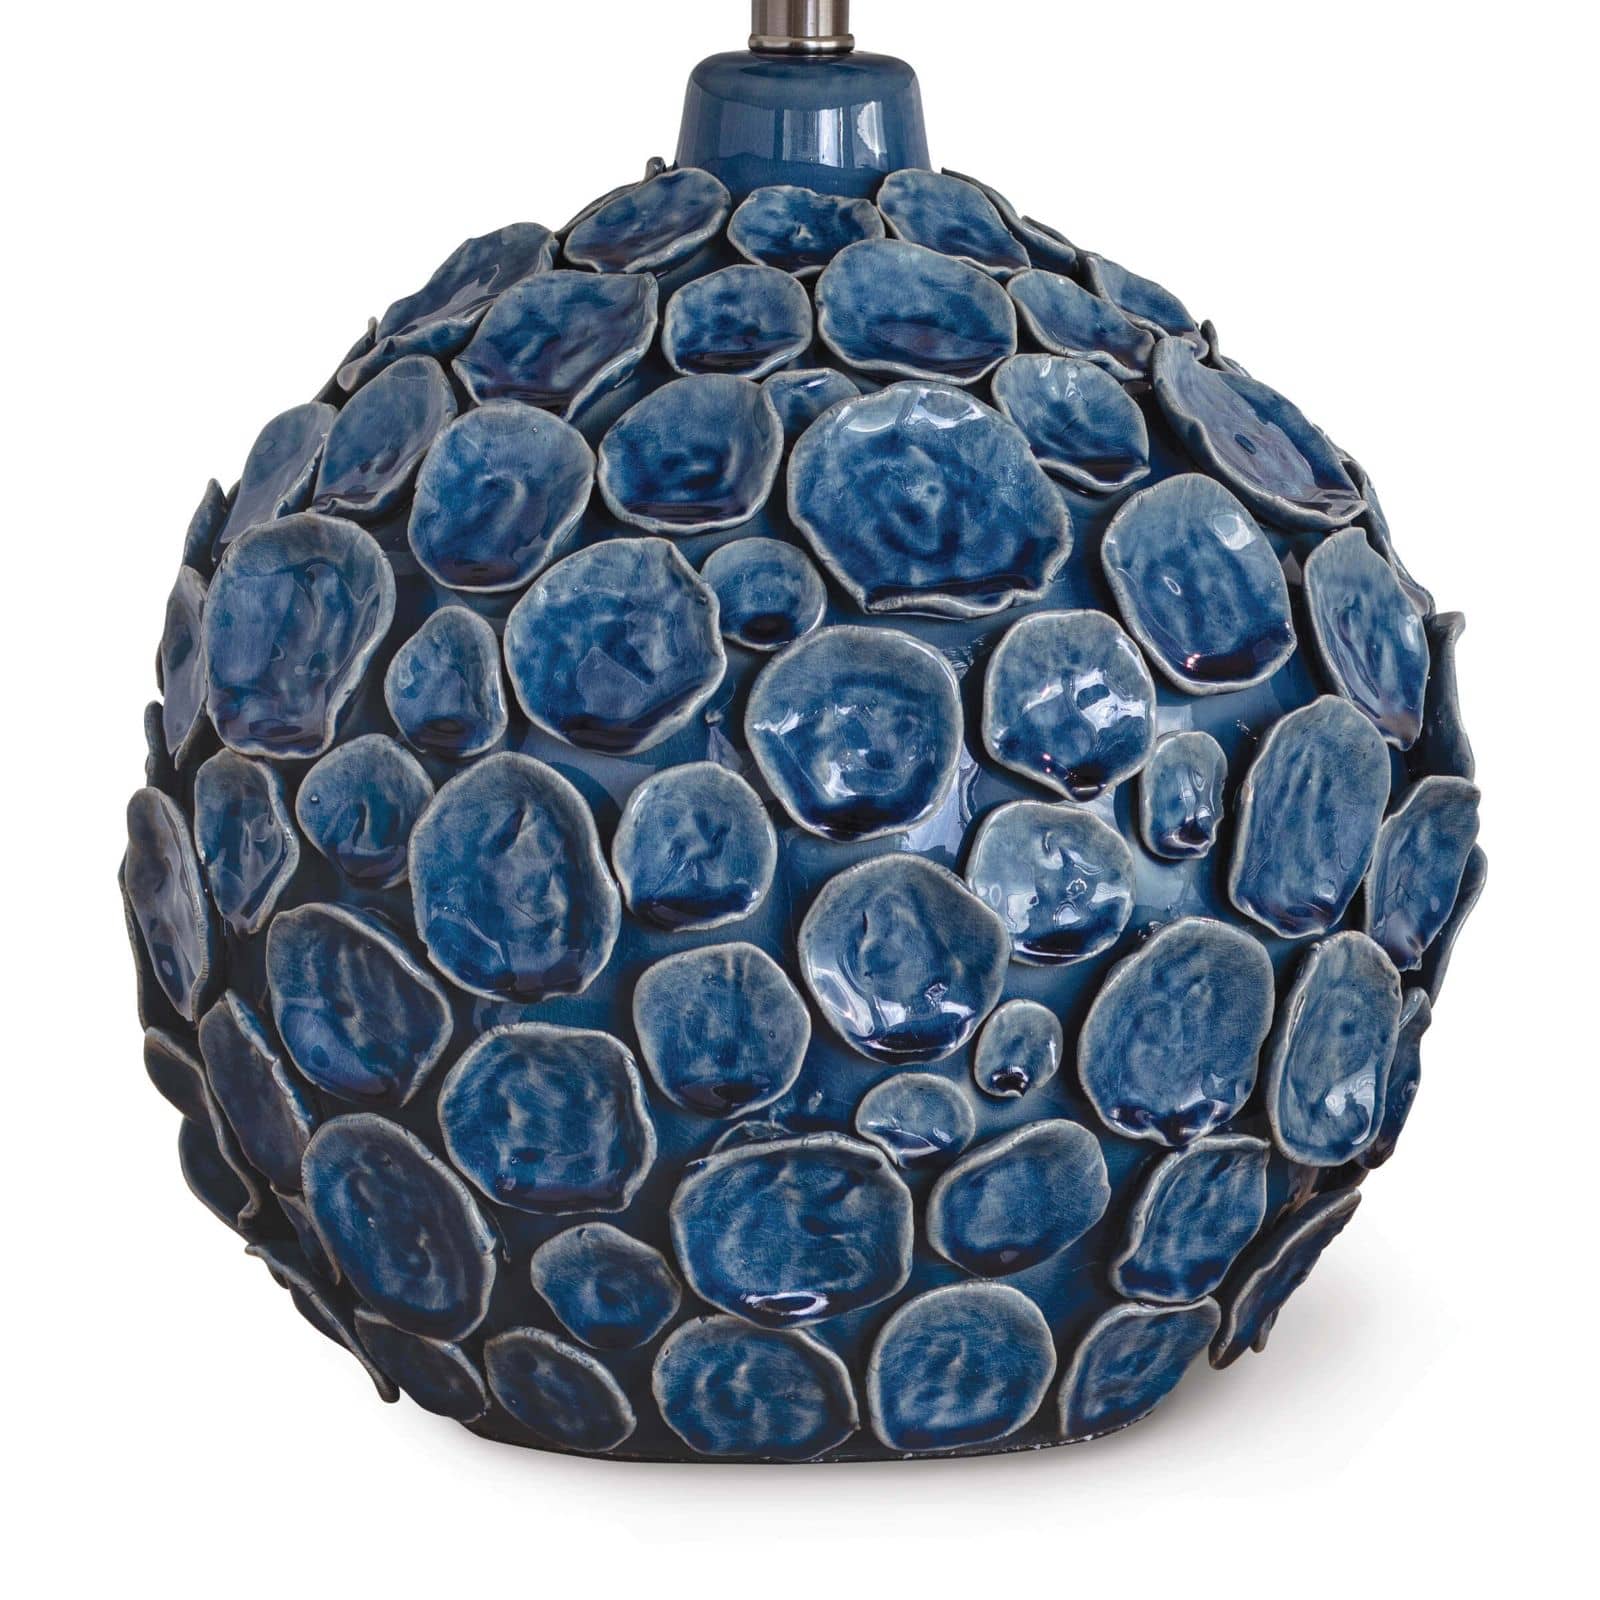 Lucia Ceramic Table Lamp - Decor - Tipplergoods